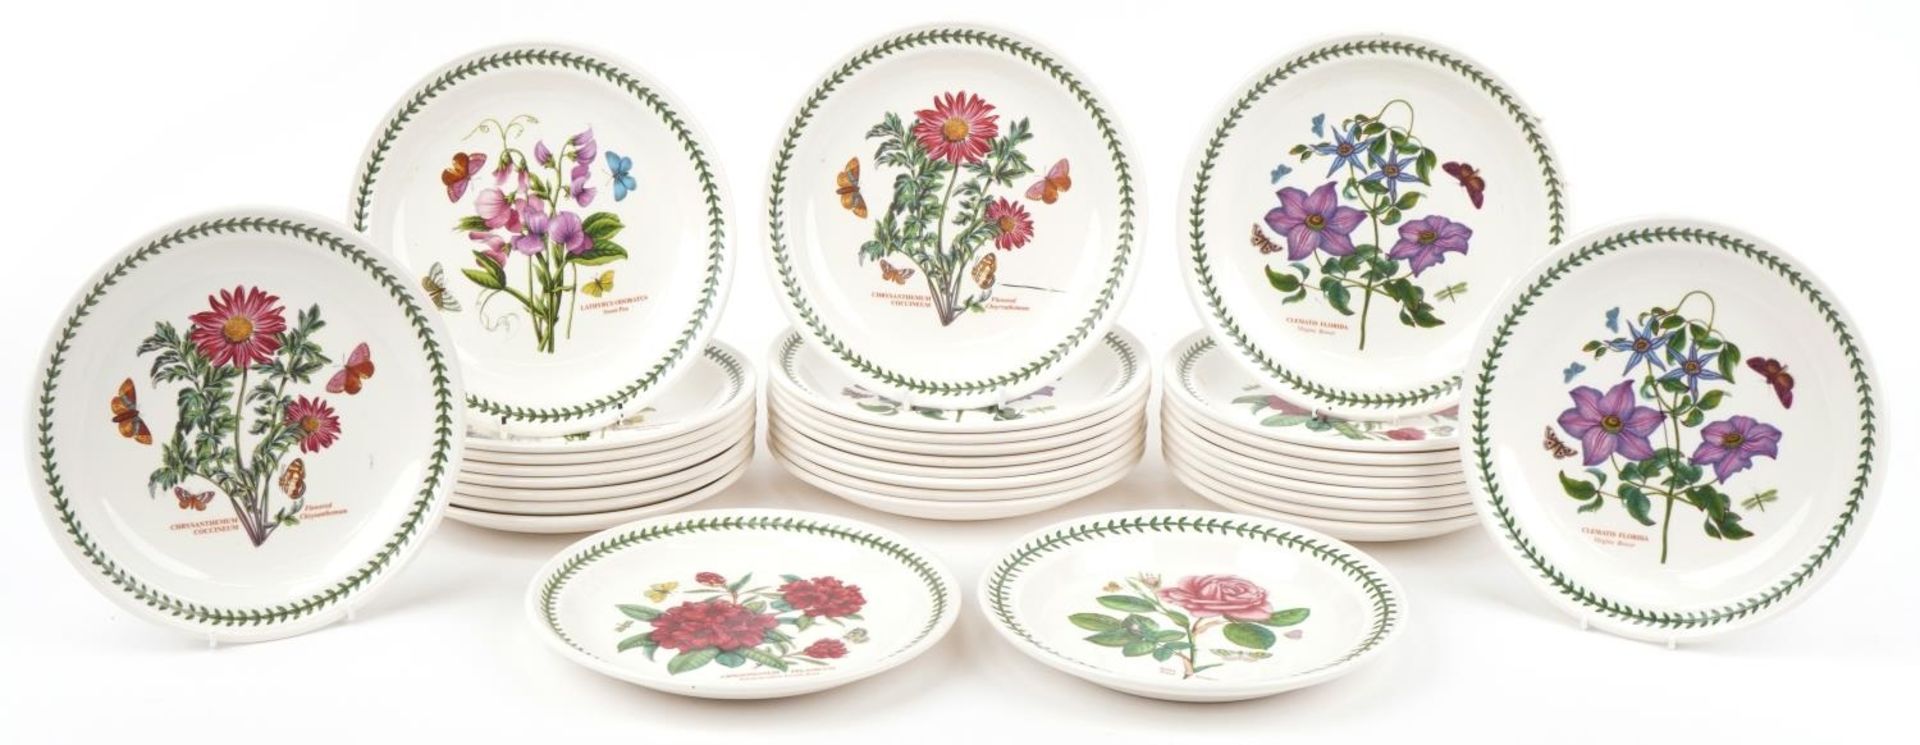 Thirty Portmeirion Botanic Garden dinner plates, 27cm in diameter - Image 2 of 8